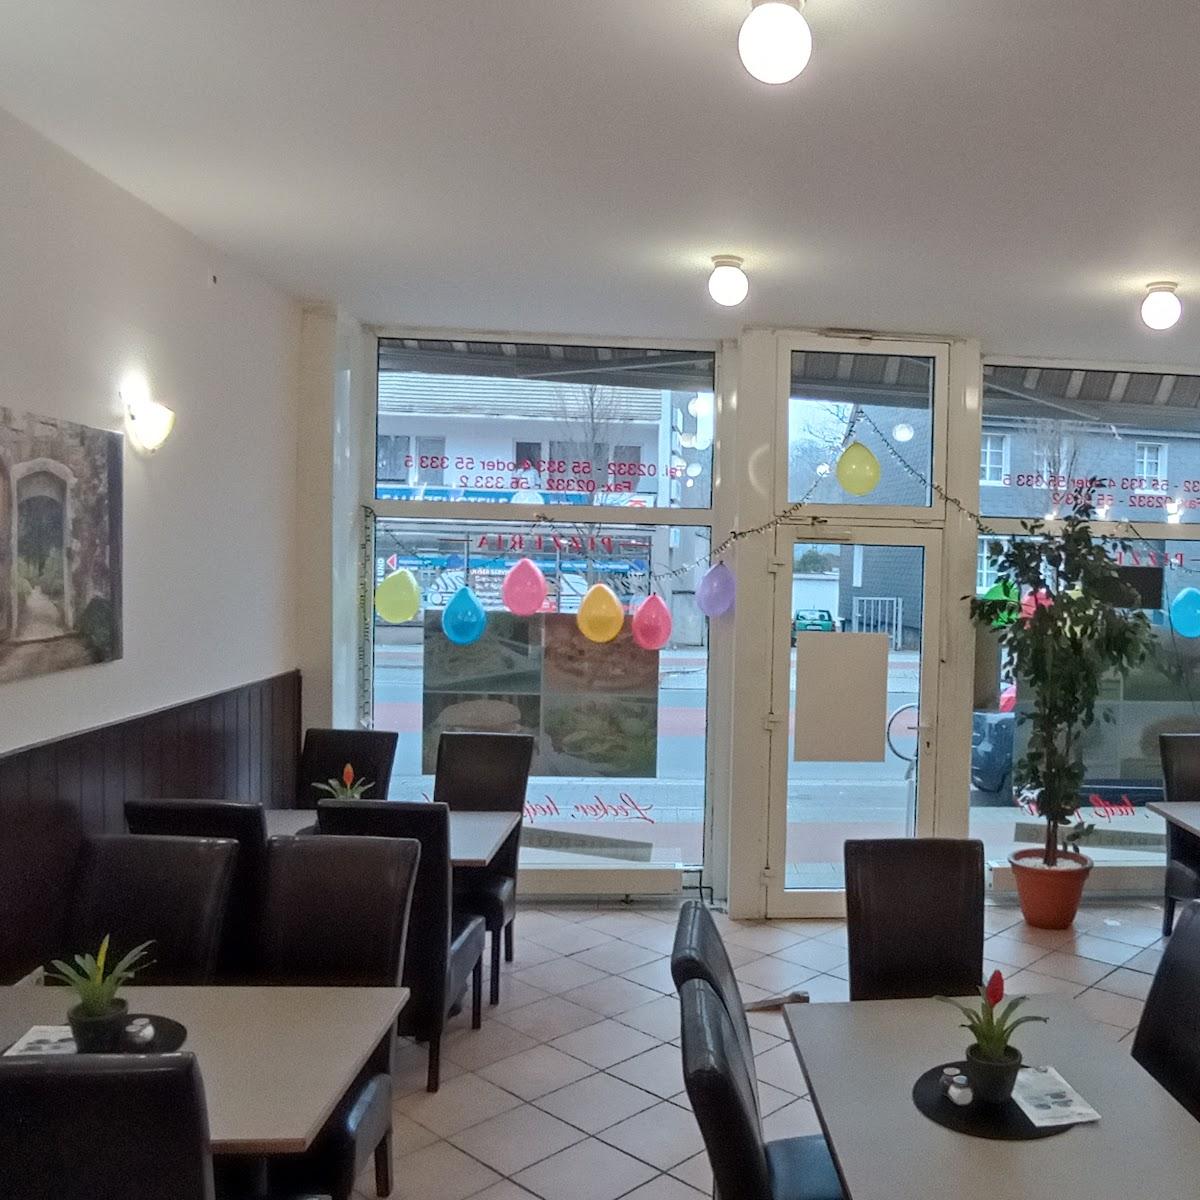 Restaurant "Vier Jahreszeiten" in Gevelsberg